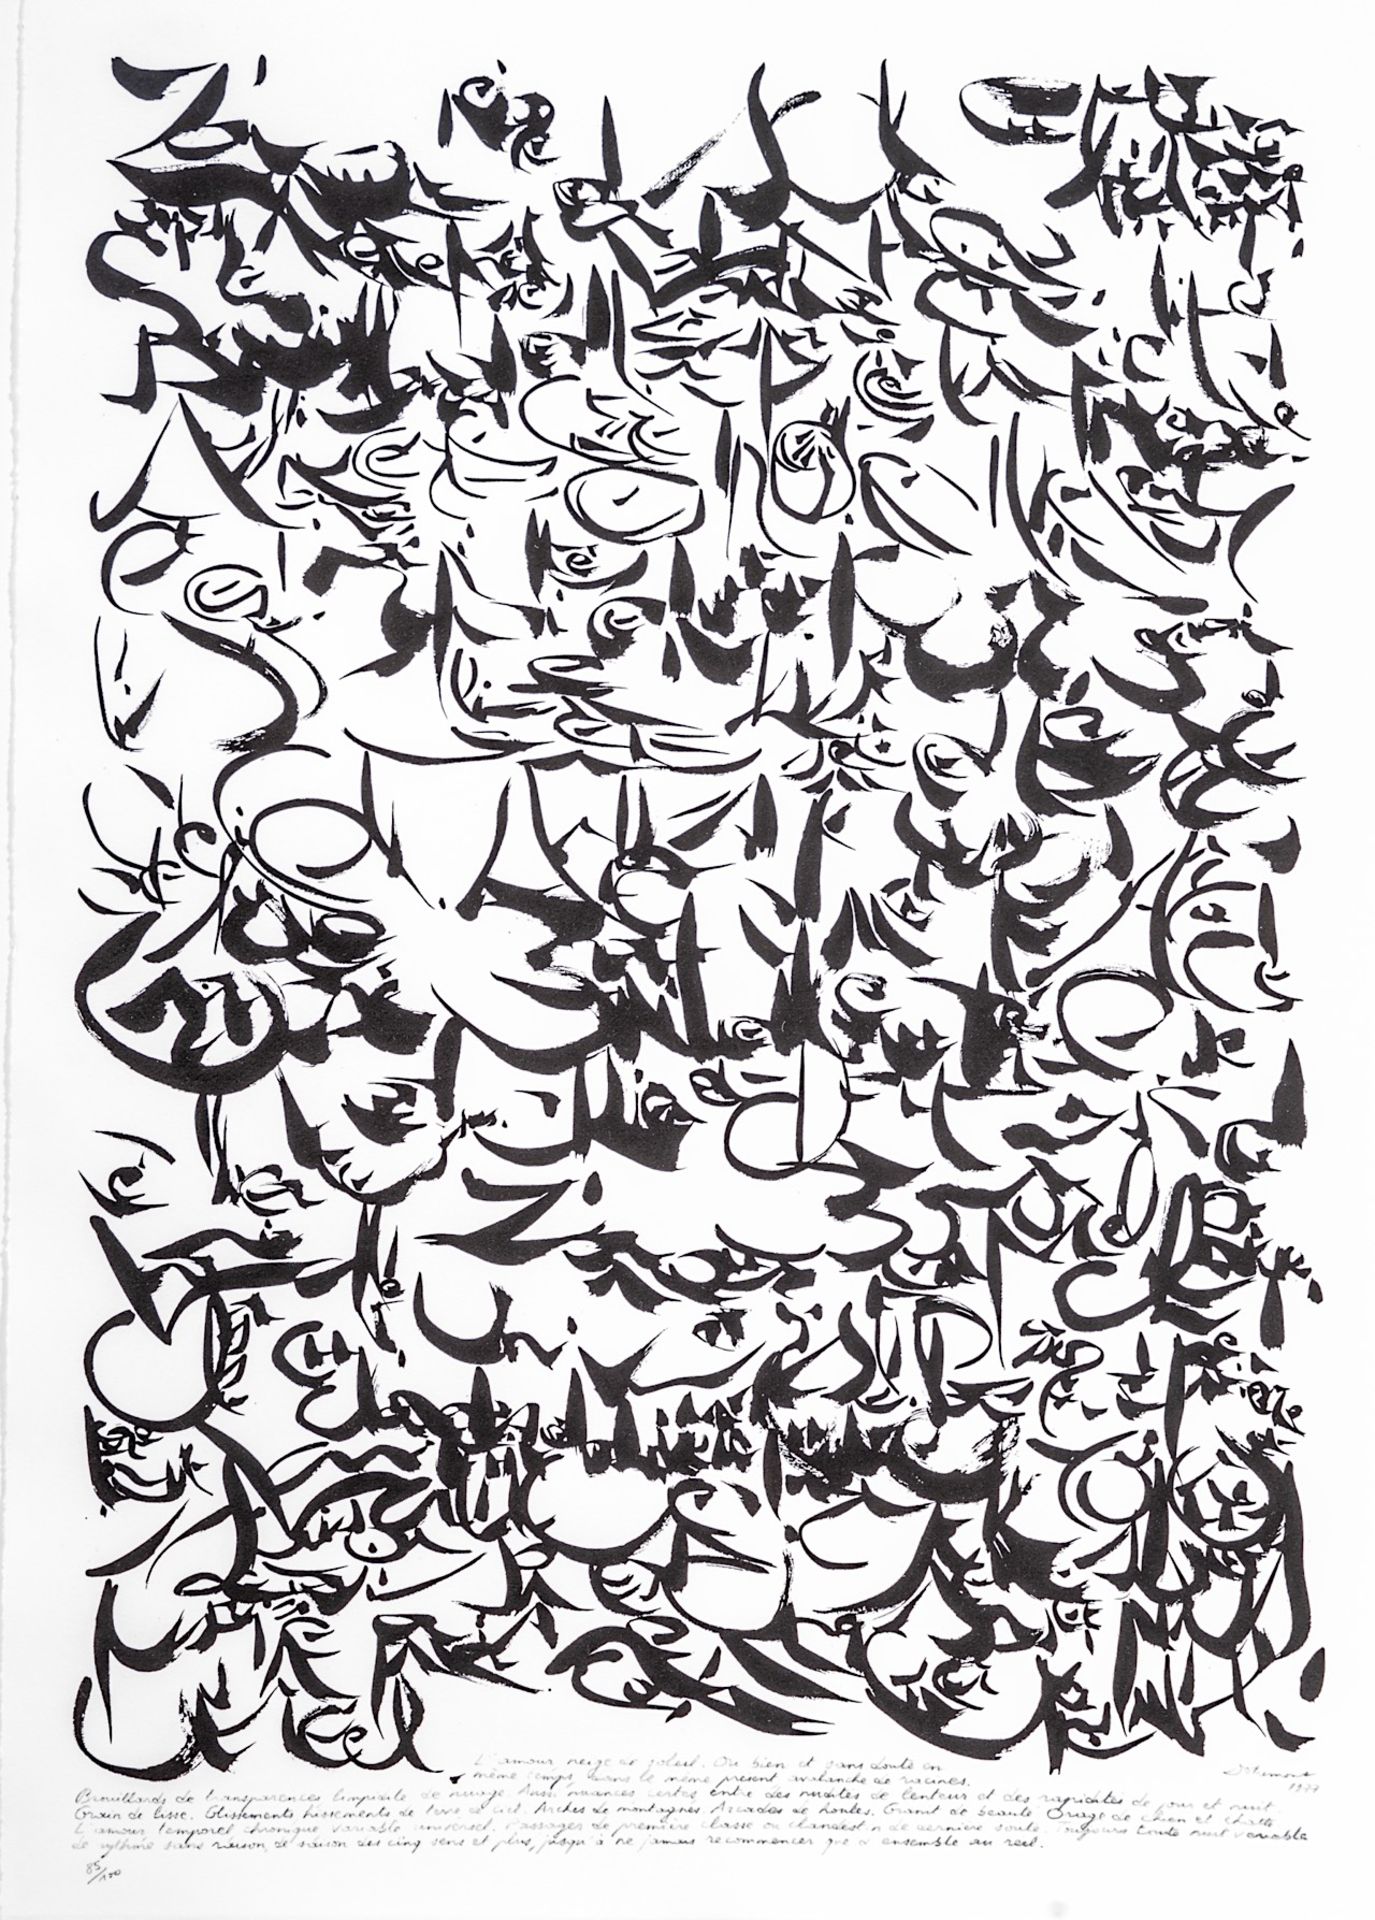 Christian Dotremont (1922-1979), 'L'Amour, neige de soleil', 1977, lithograph, Ndeg 85/100 90 x 62 c